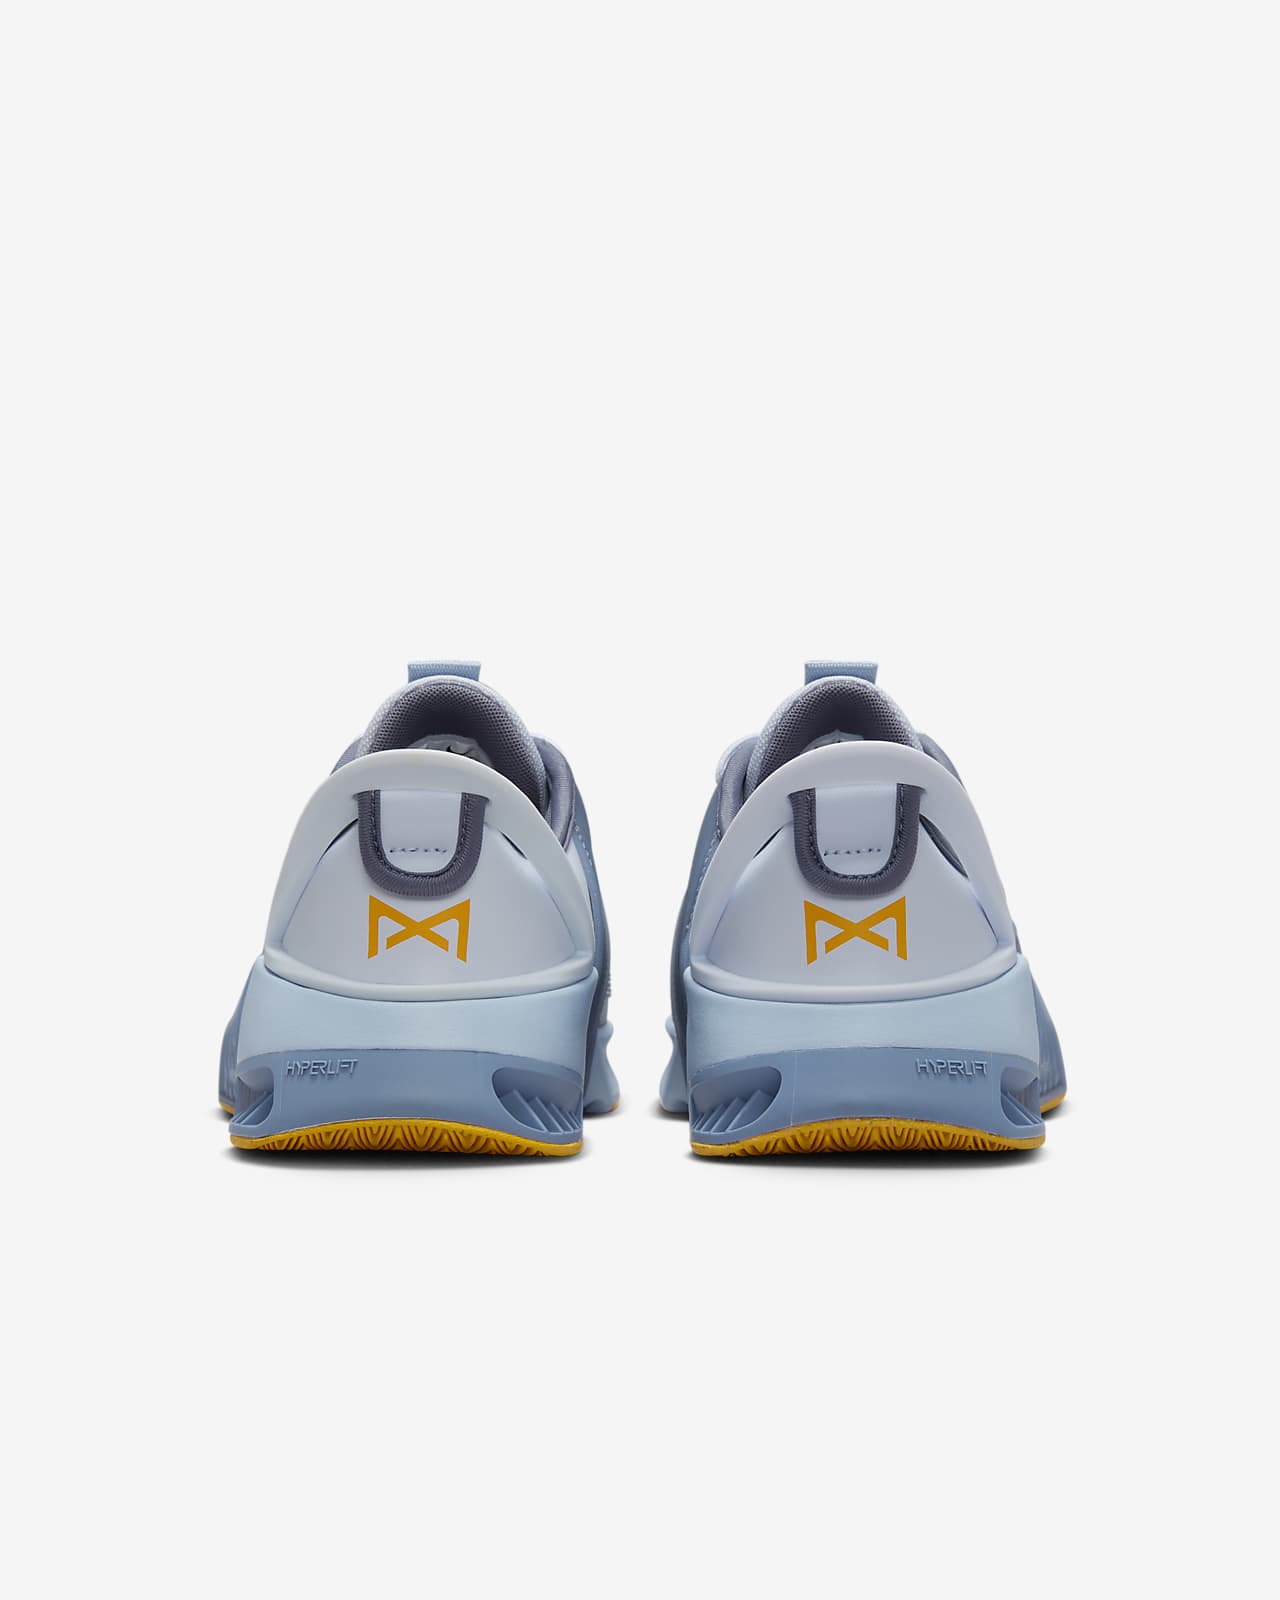 Nike Metcon 9 EasyOn Men's Workout Shoes